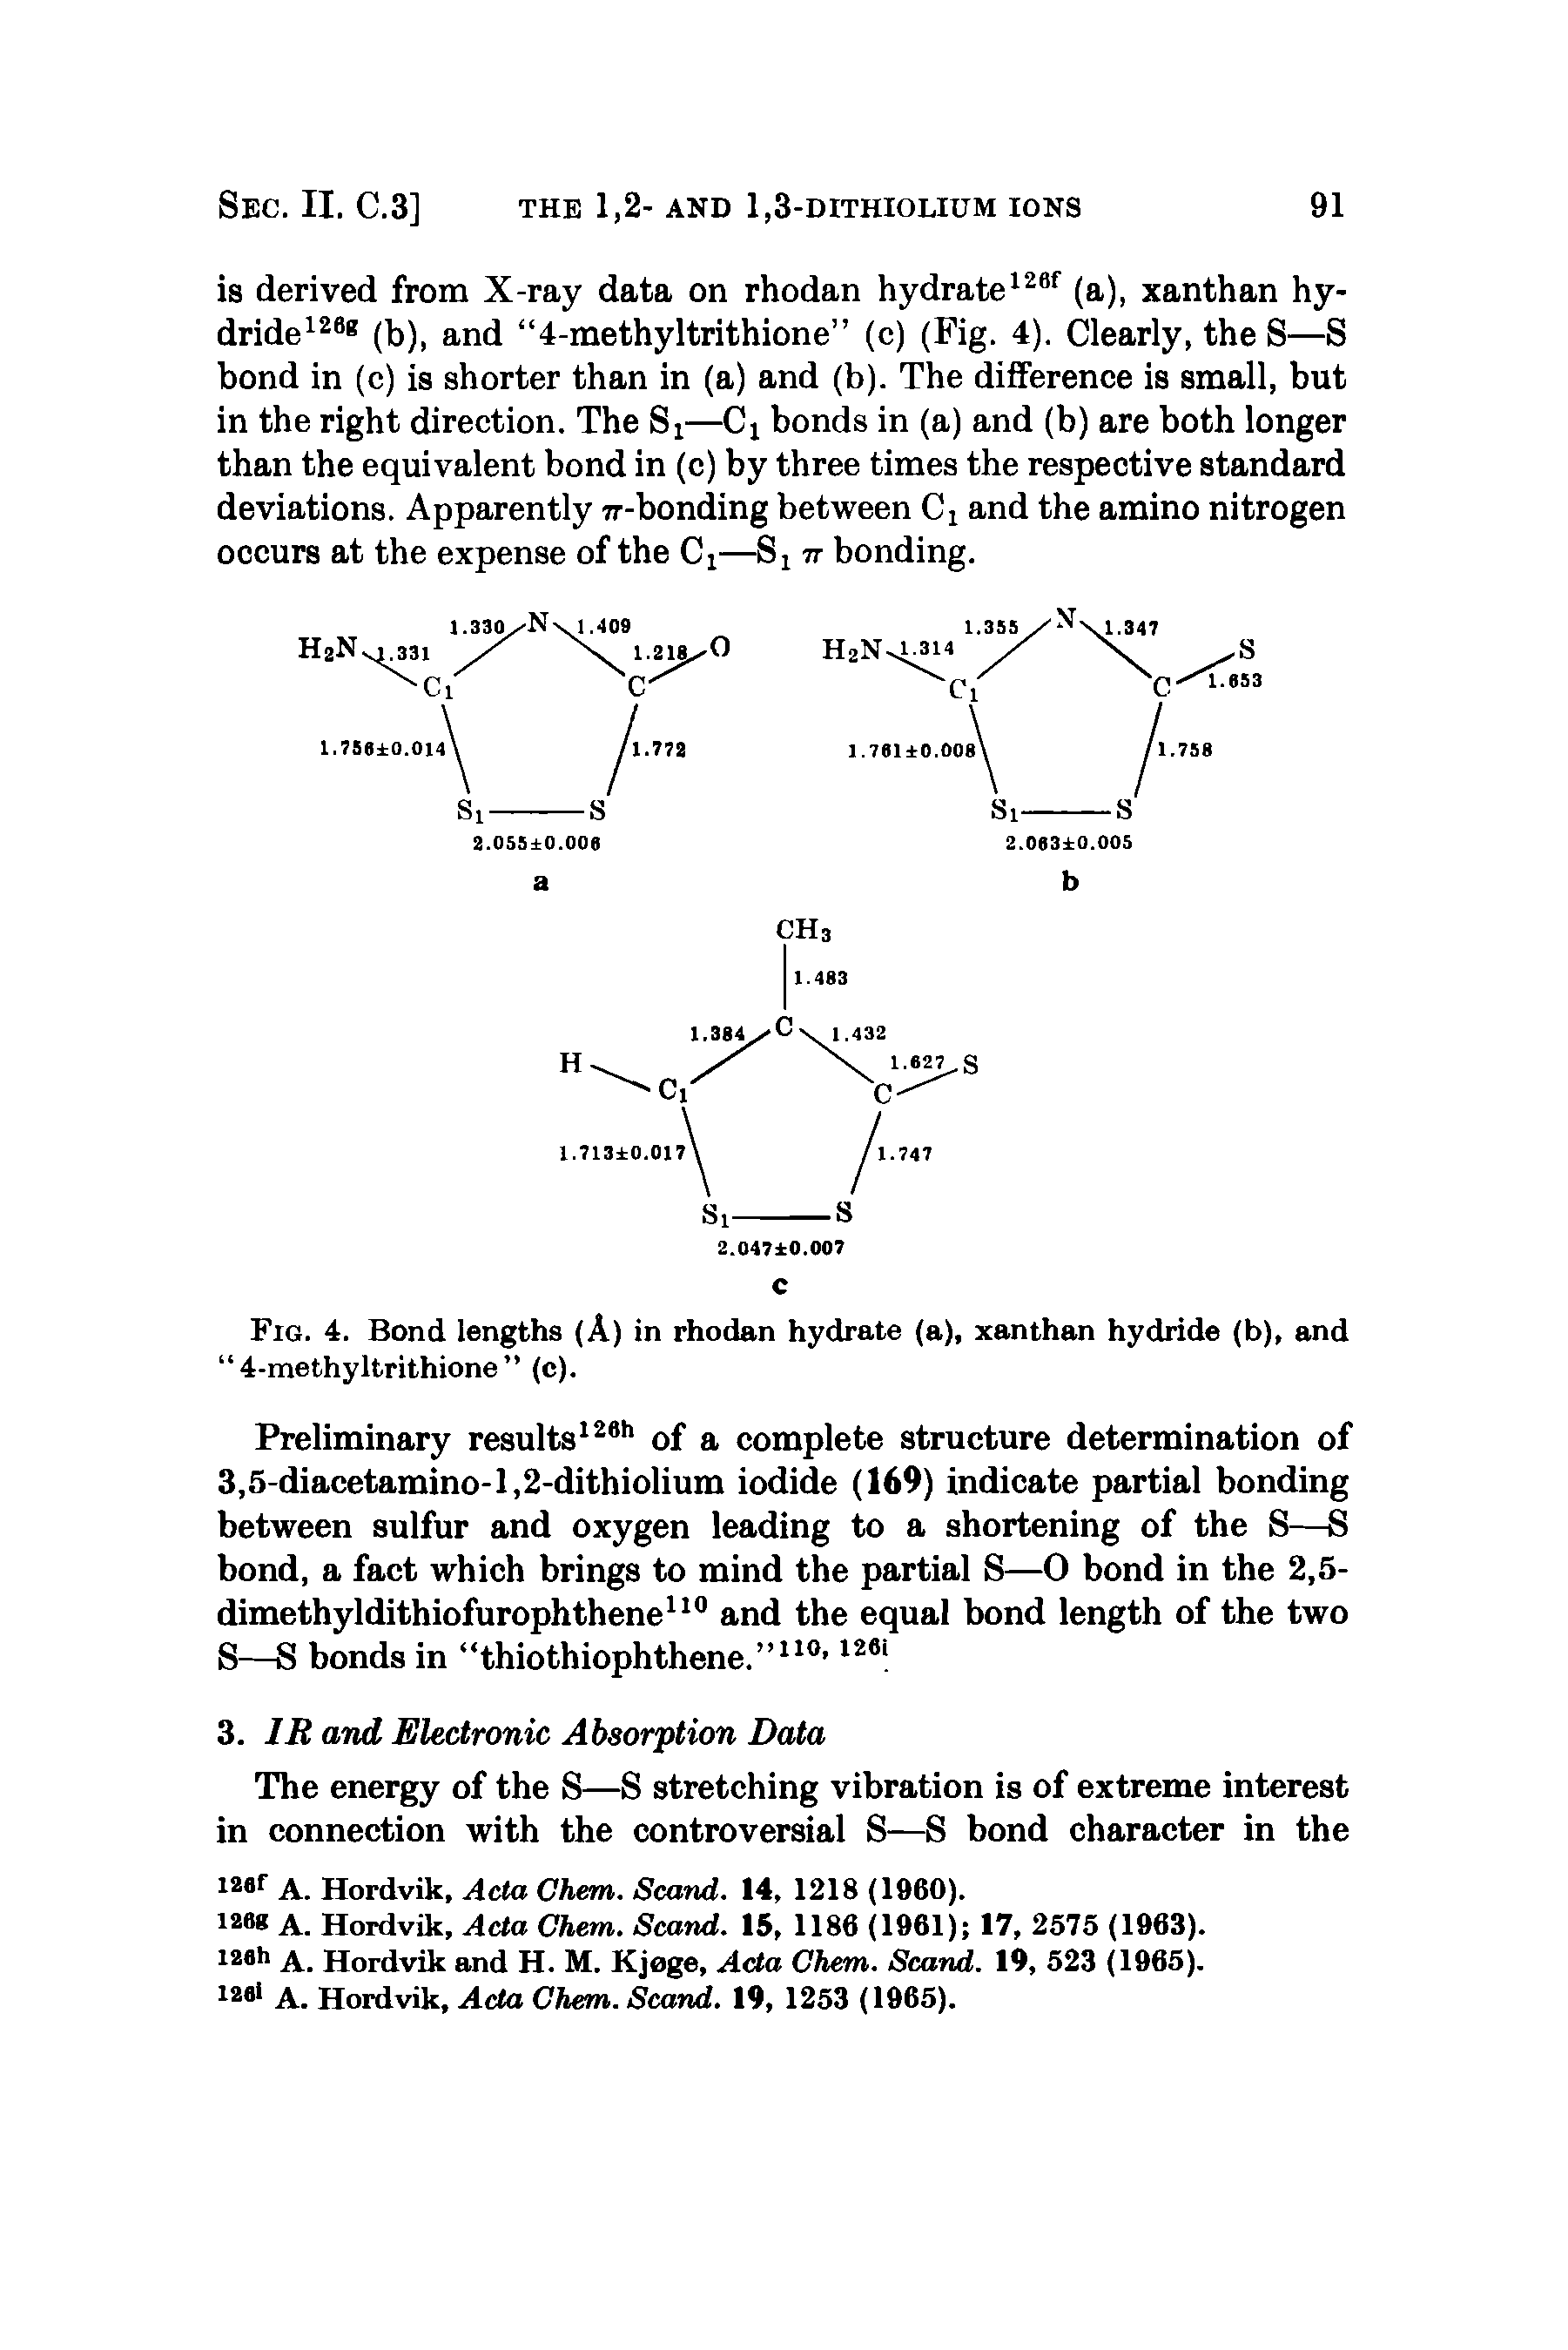 Fig. 4. Bond lengths (A) in rhodan hydrate (a), xanthan hydride (b), and 4-methyltrithione (c).